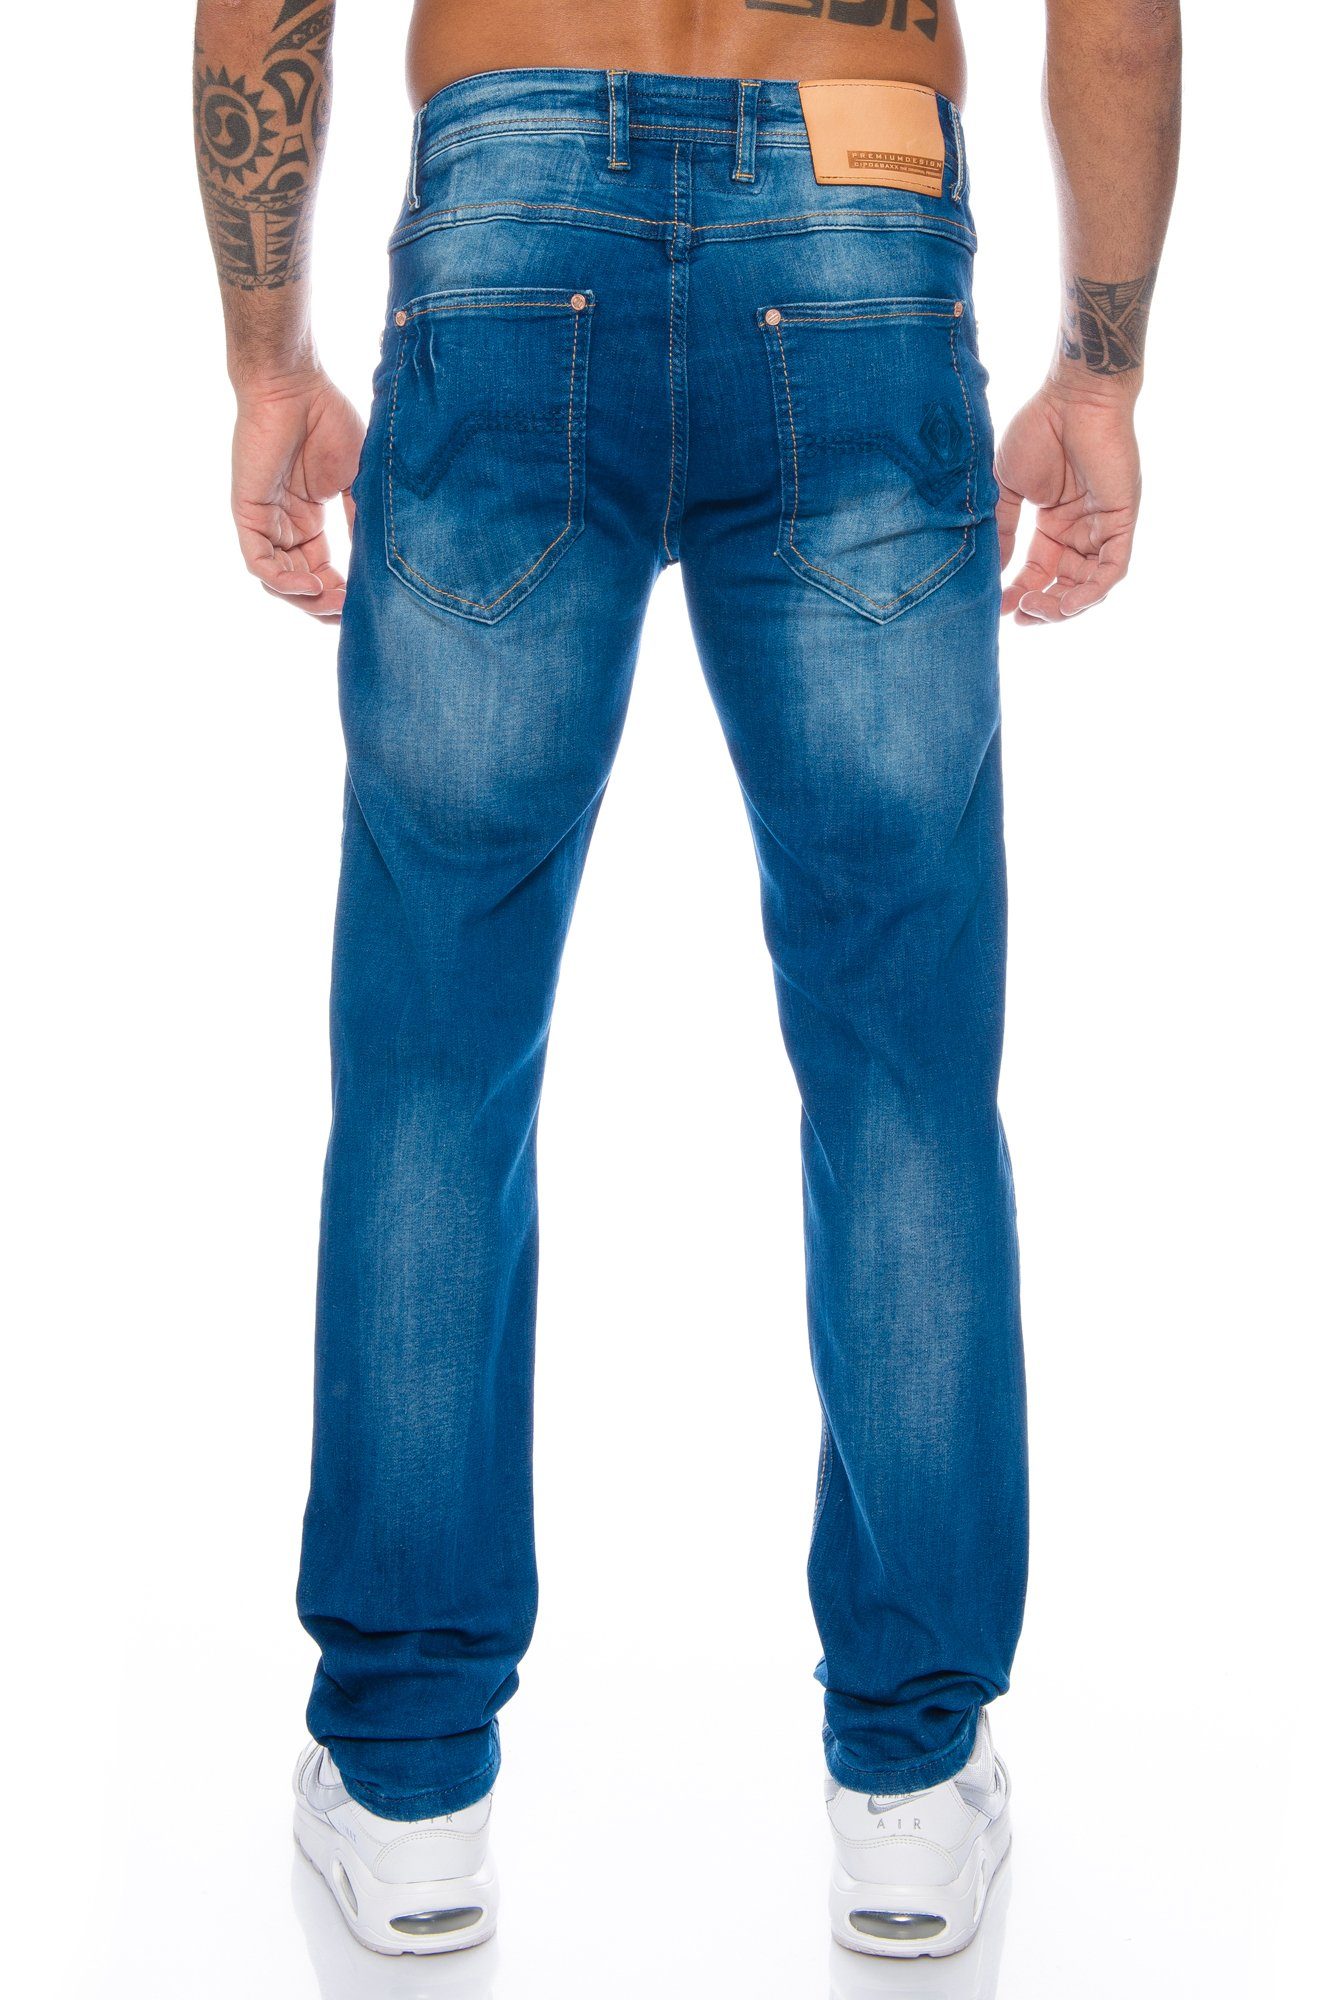 Nahtverzierung Baxx Look Herren & Slim-fit-Jeans Hochwertige im Tragekomfort dezenten dicken Hose Cipo perfekter mit und Jeans Nähten